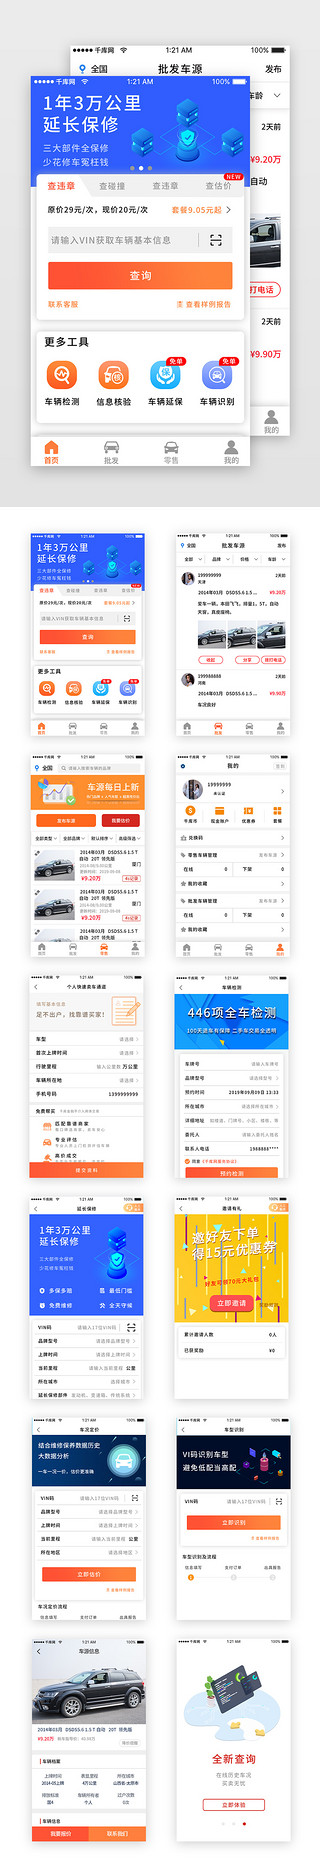 车辆跟踪UI设计素材_蓝色科技二手车销售车辆app套图